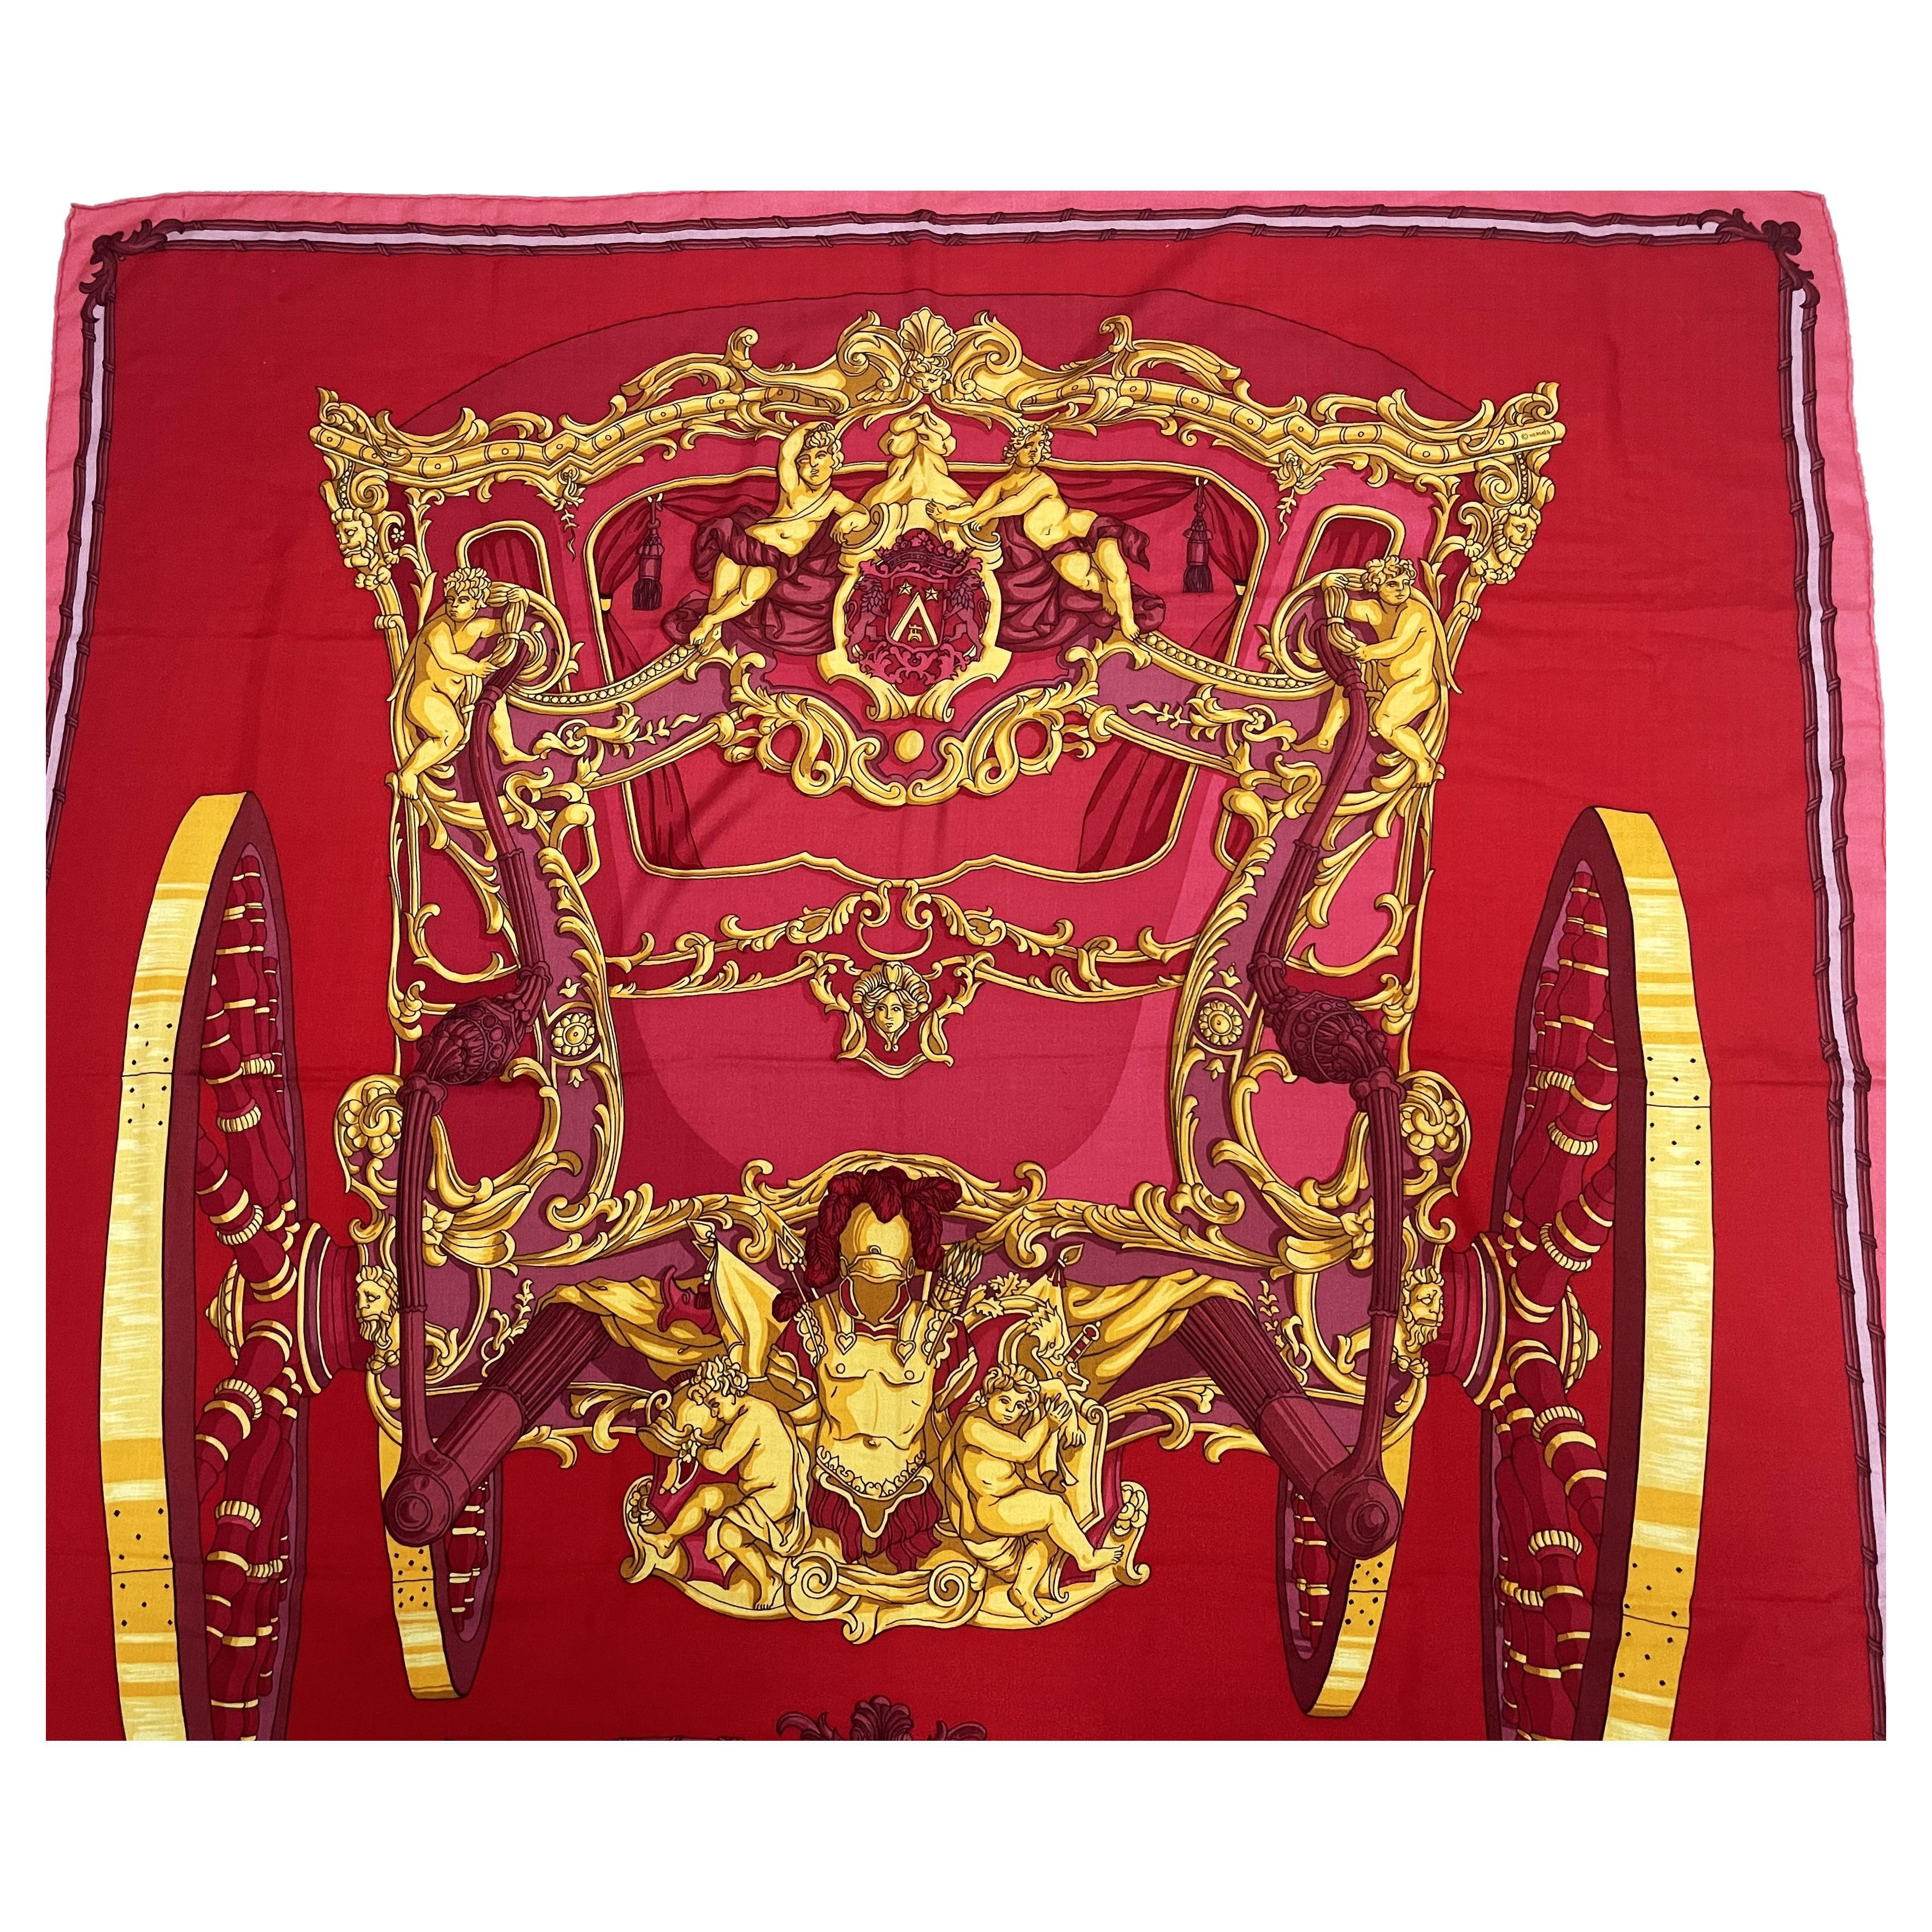 Très belle écharpe décorative de 140 cm x 140 cm en 65% cachemire et 35% soie dans les couleurs rouge, jaune et rose.

Le thème de la grande collection Hermes Shawel  est :
GRAND CARROSSE povr by AMBASSADEVR par HERMES A PARIS' ANNO MDCC :